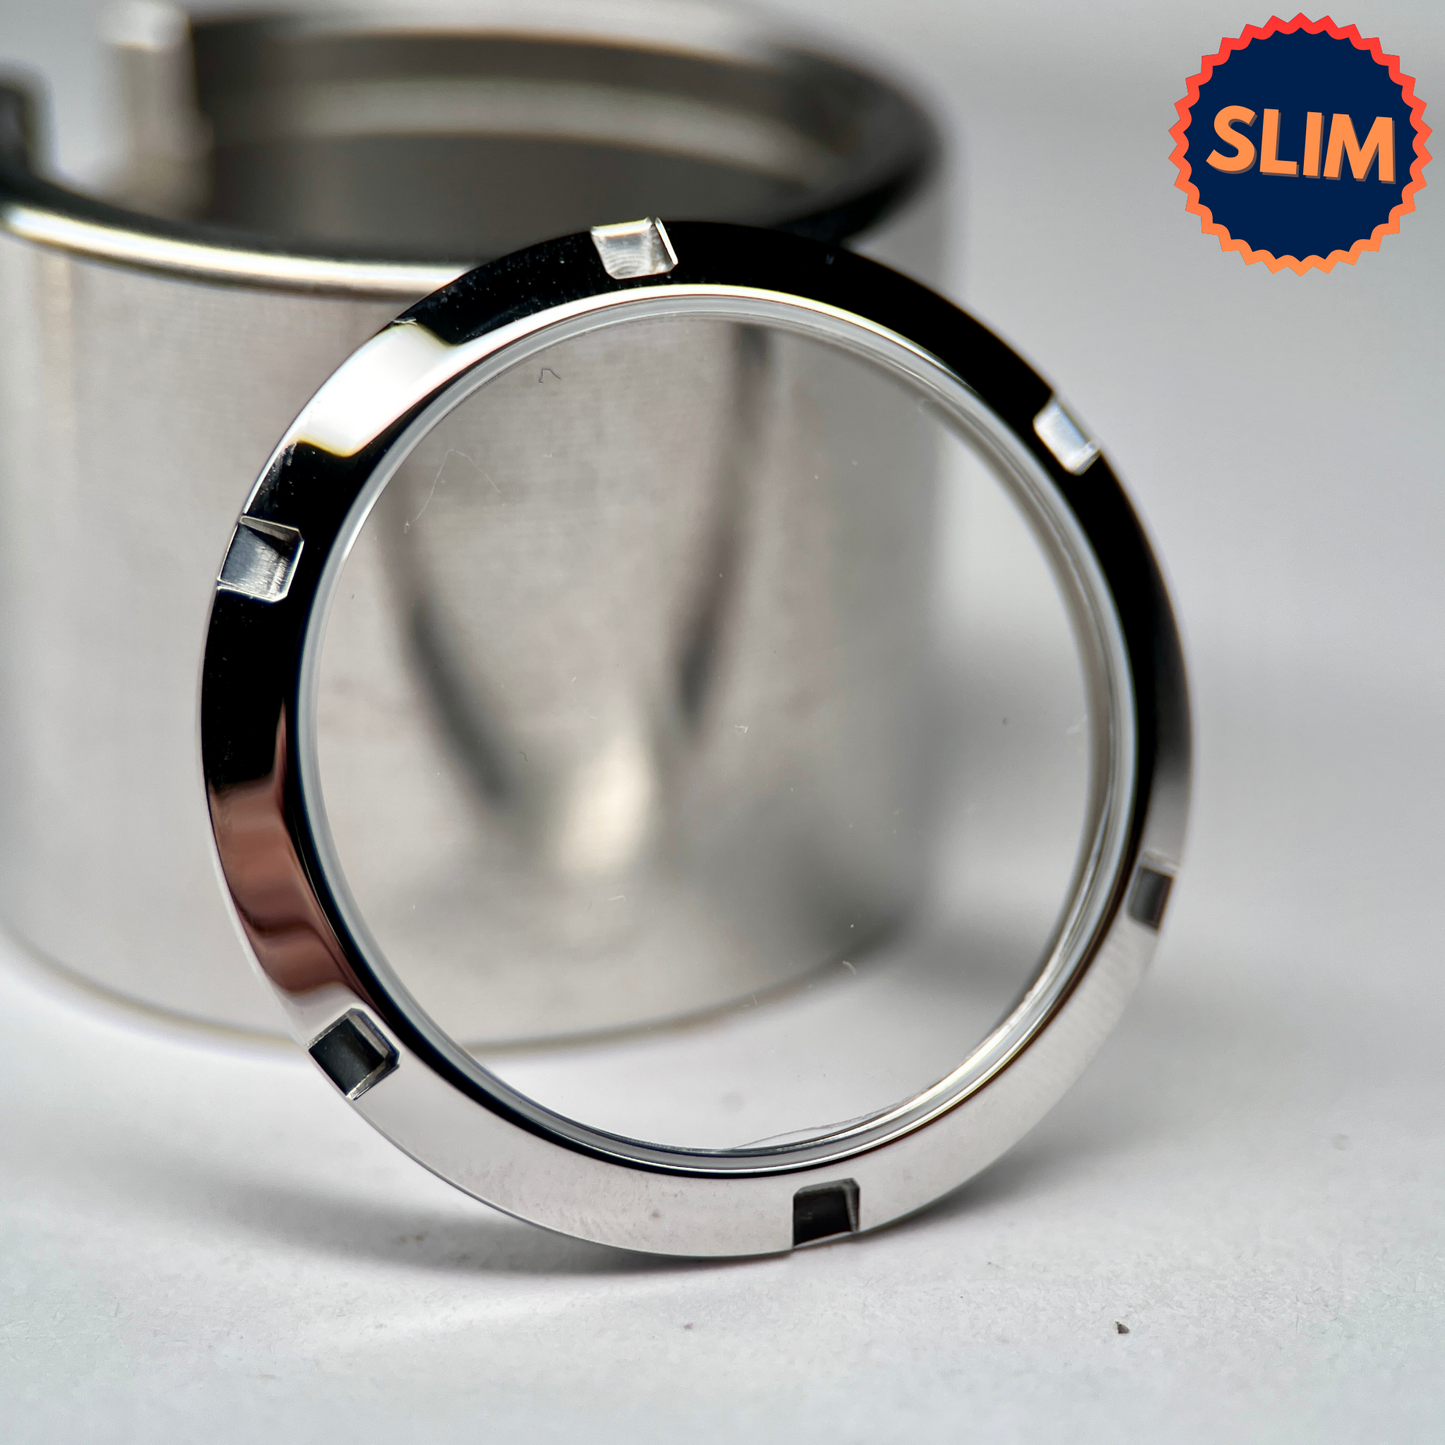 SKX007 Slim: Polished Silver Open Caseback